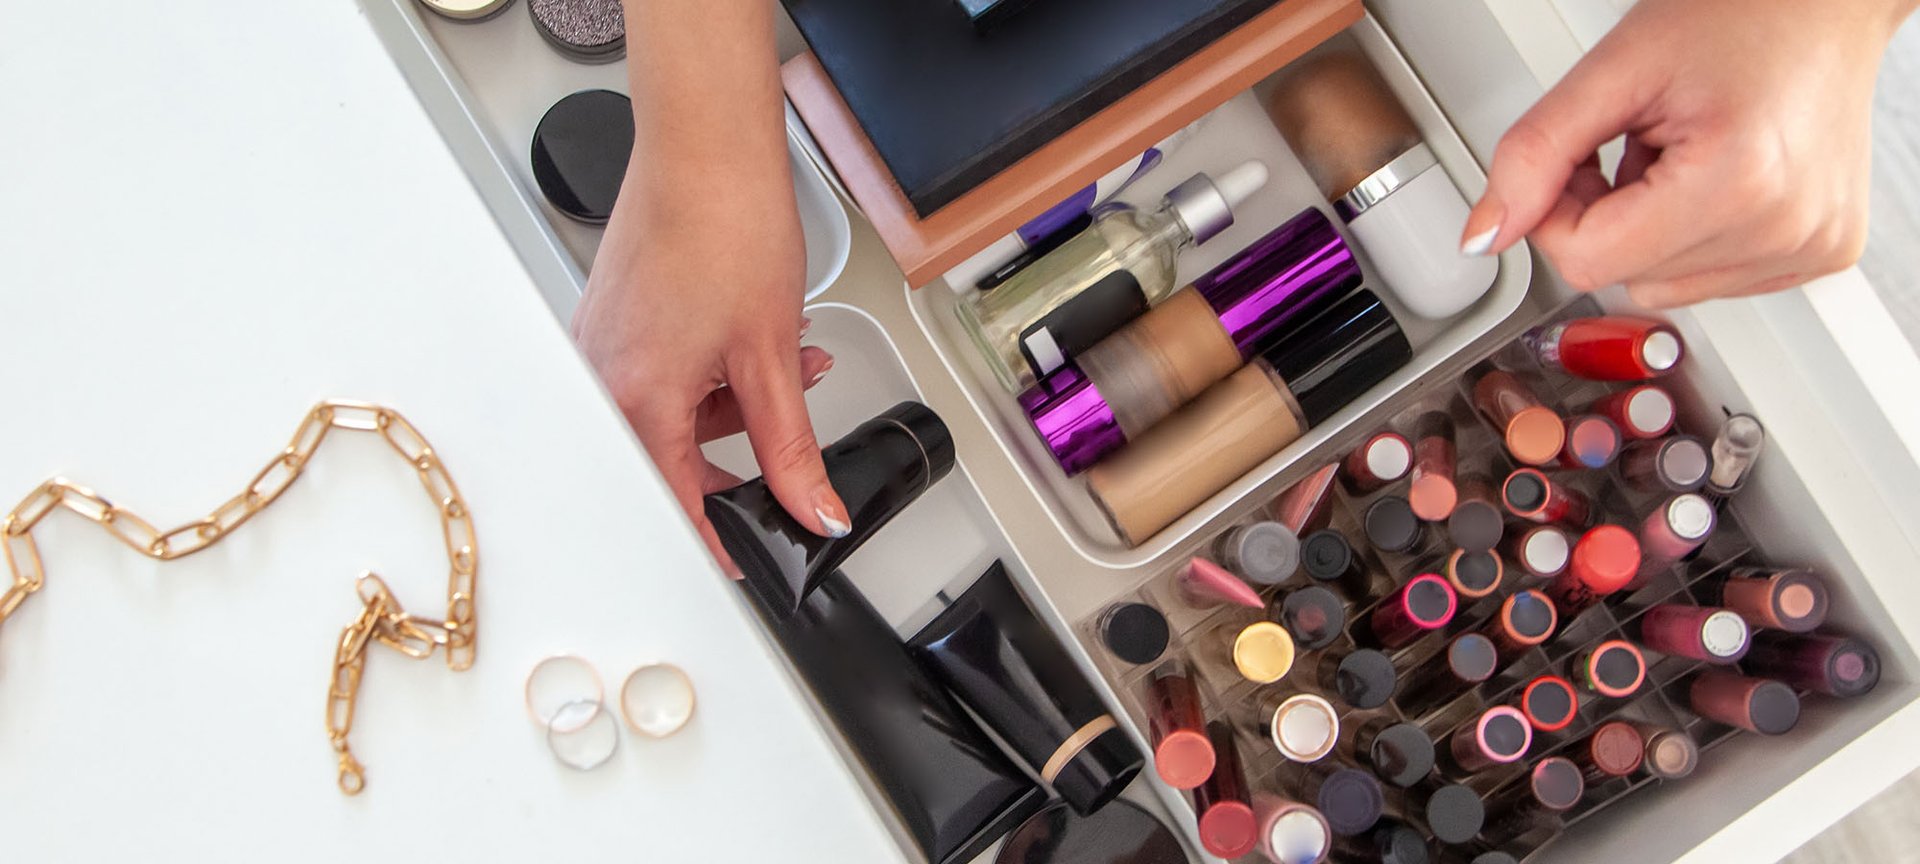 How To Organize Your Makeup Collection - L'Oréal Paris